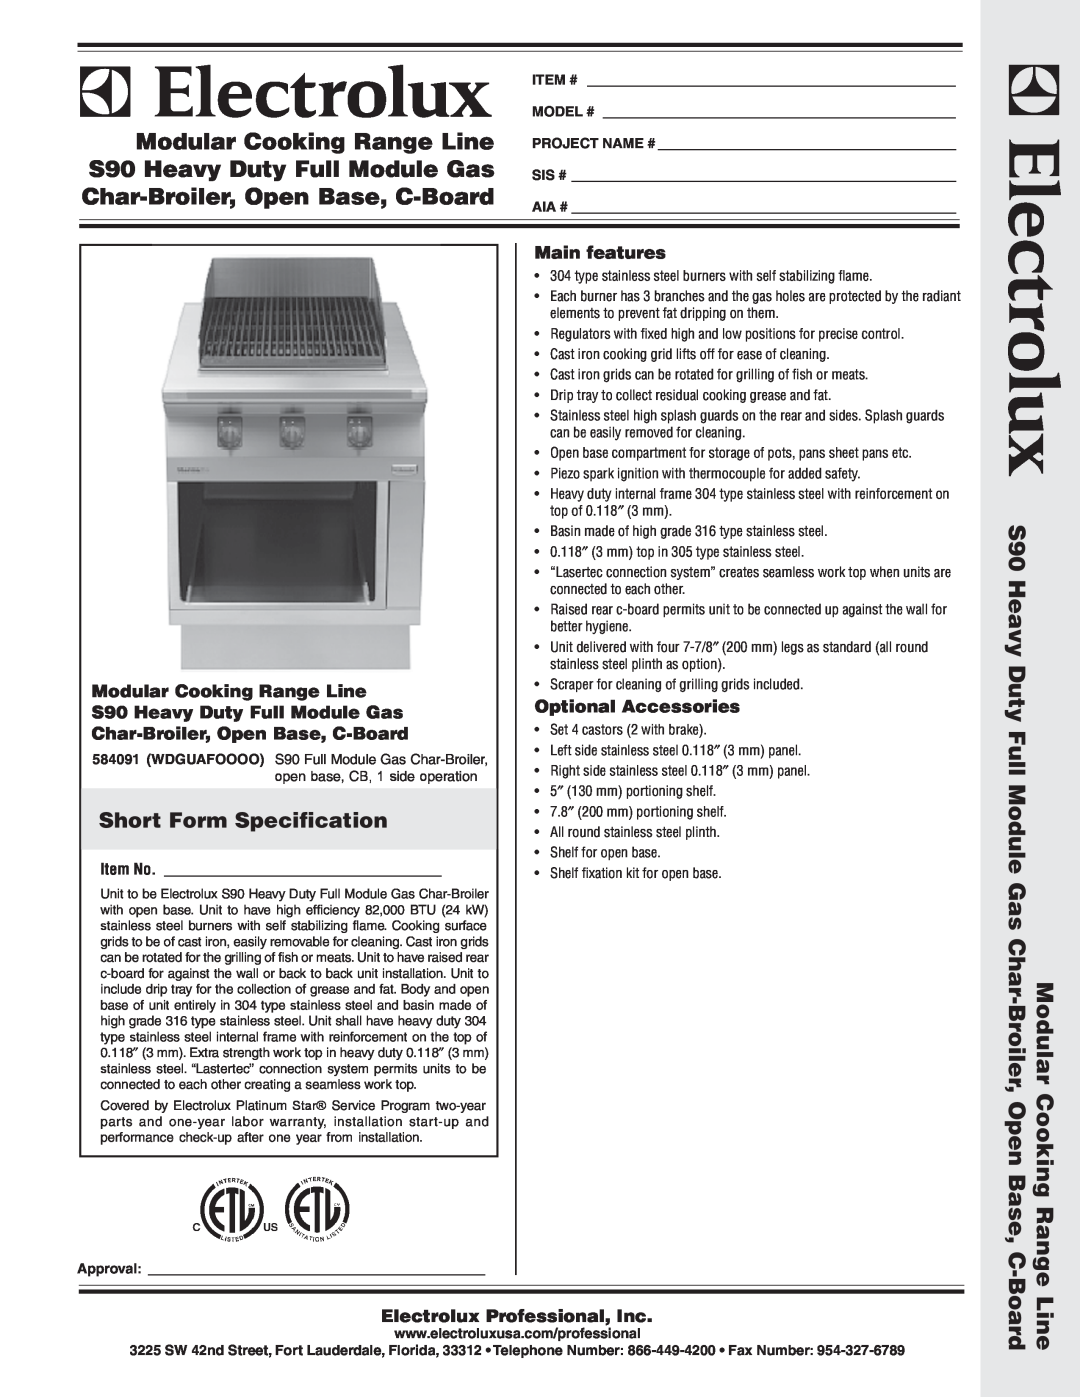 Electrolux 584091 warranty Short Form Specification, Modular Cooking Range Line S90 Heavy Duty Full Module Gas, Item # 